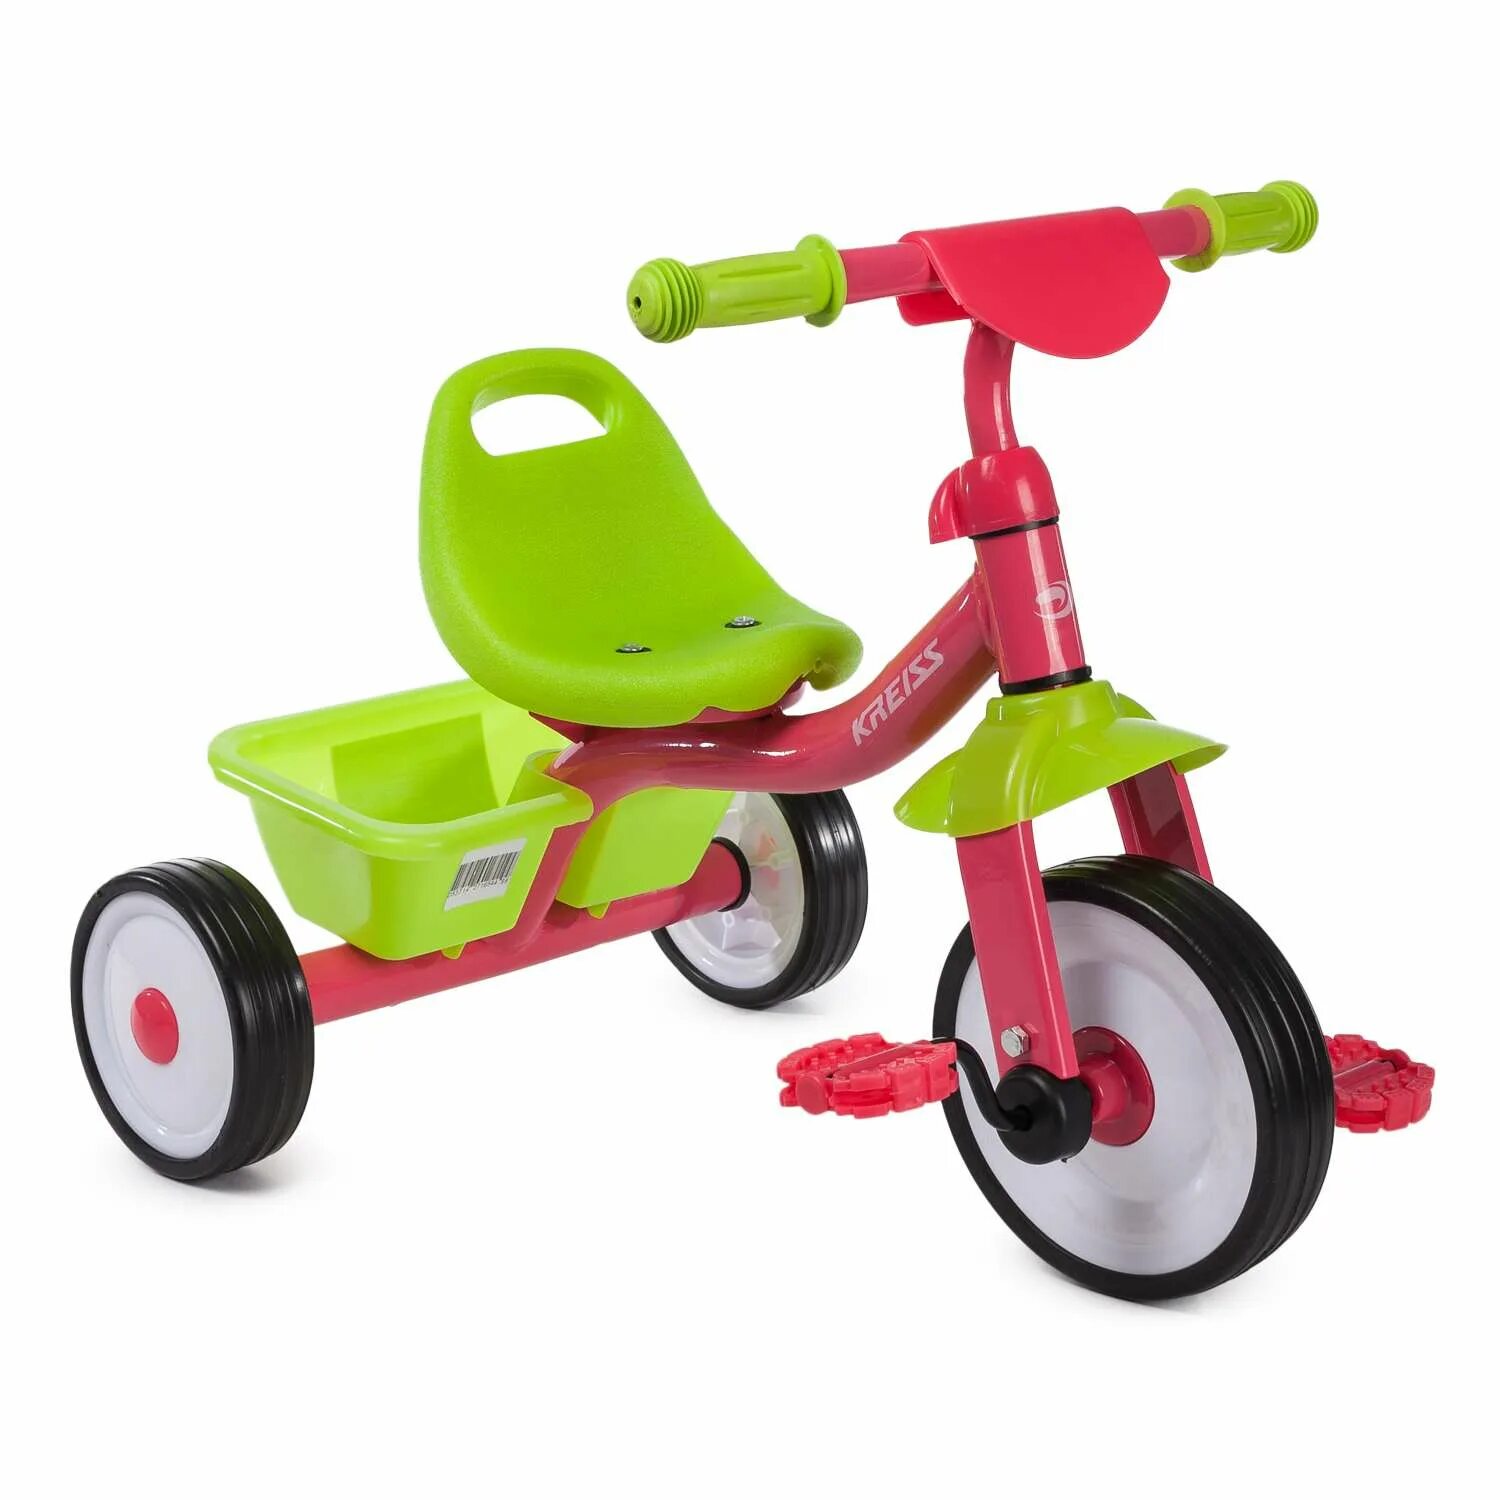 Велосипед Крейс трехколесный. Kreiss велосипед трехколесный. Велосипед Kreiss розово-зеленый. Трехколесный велосипед Kreiss зеленый. Kreiss велосипед трехколесный с ручкой